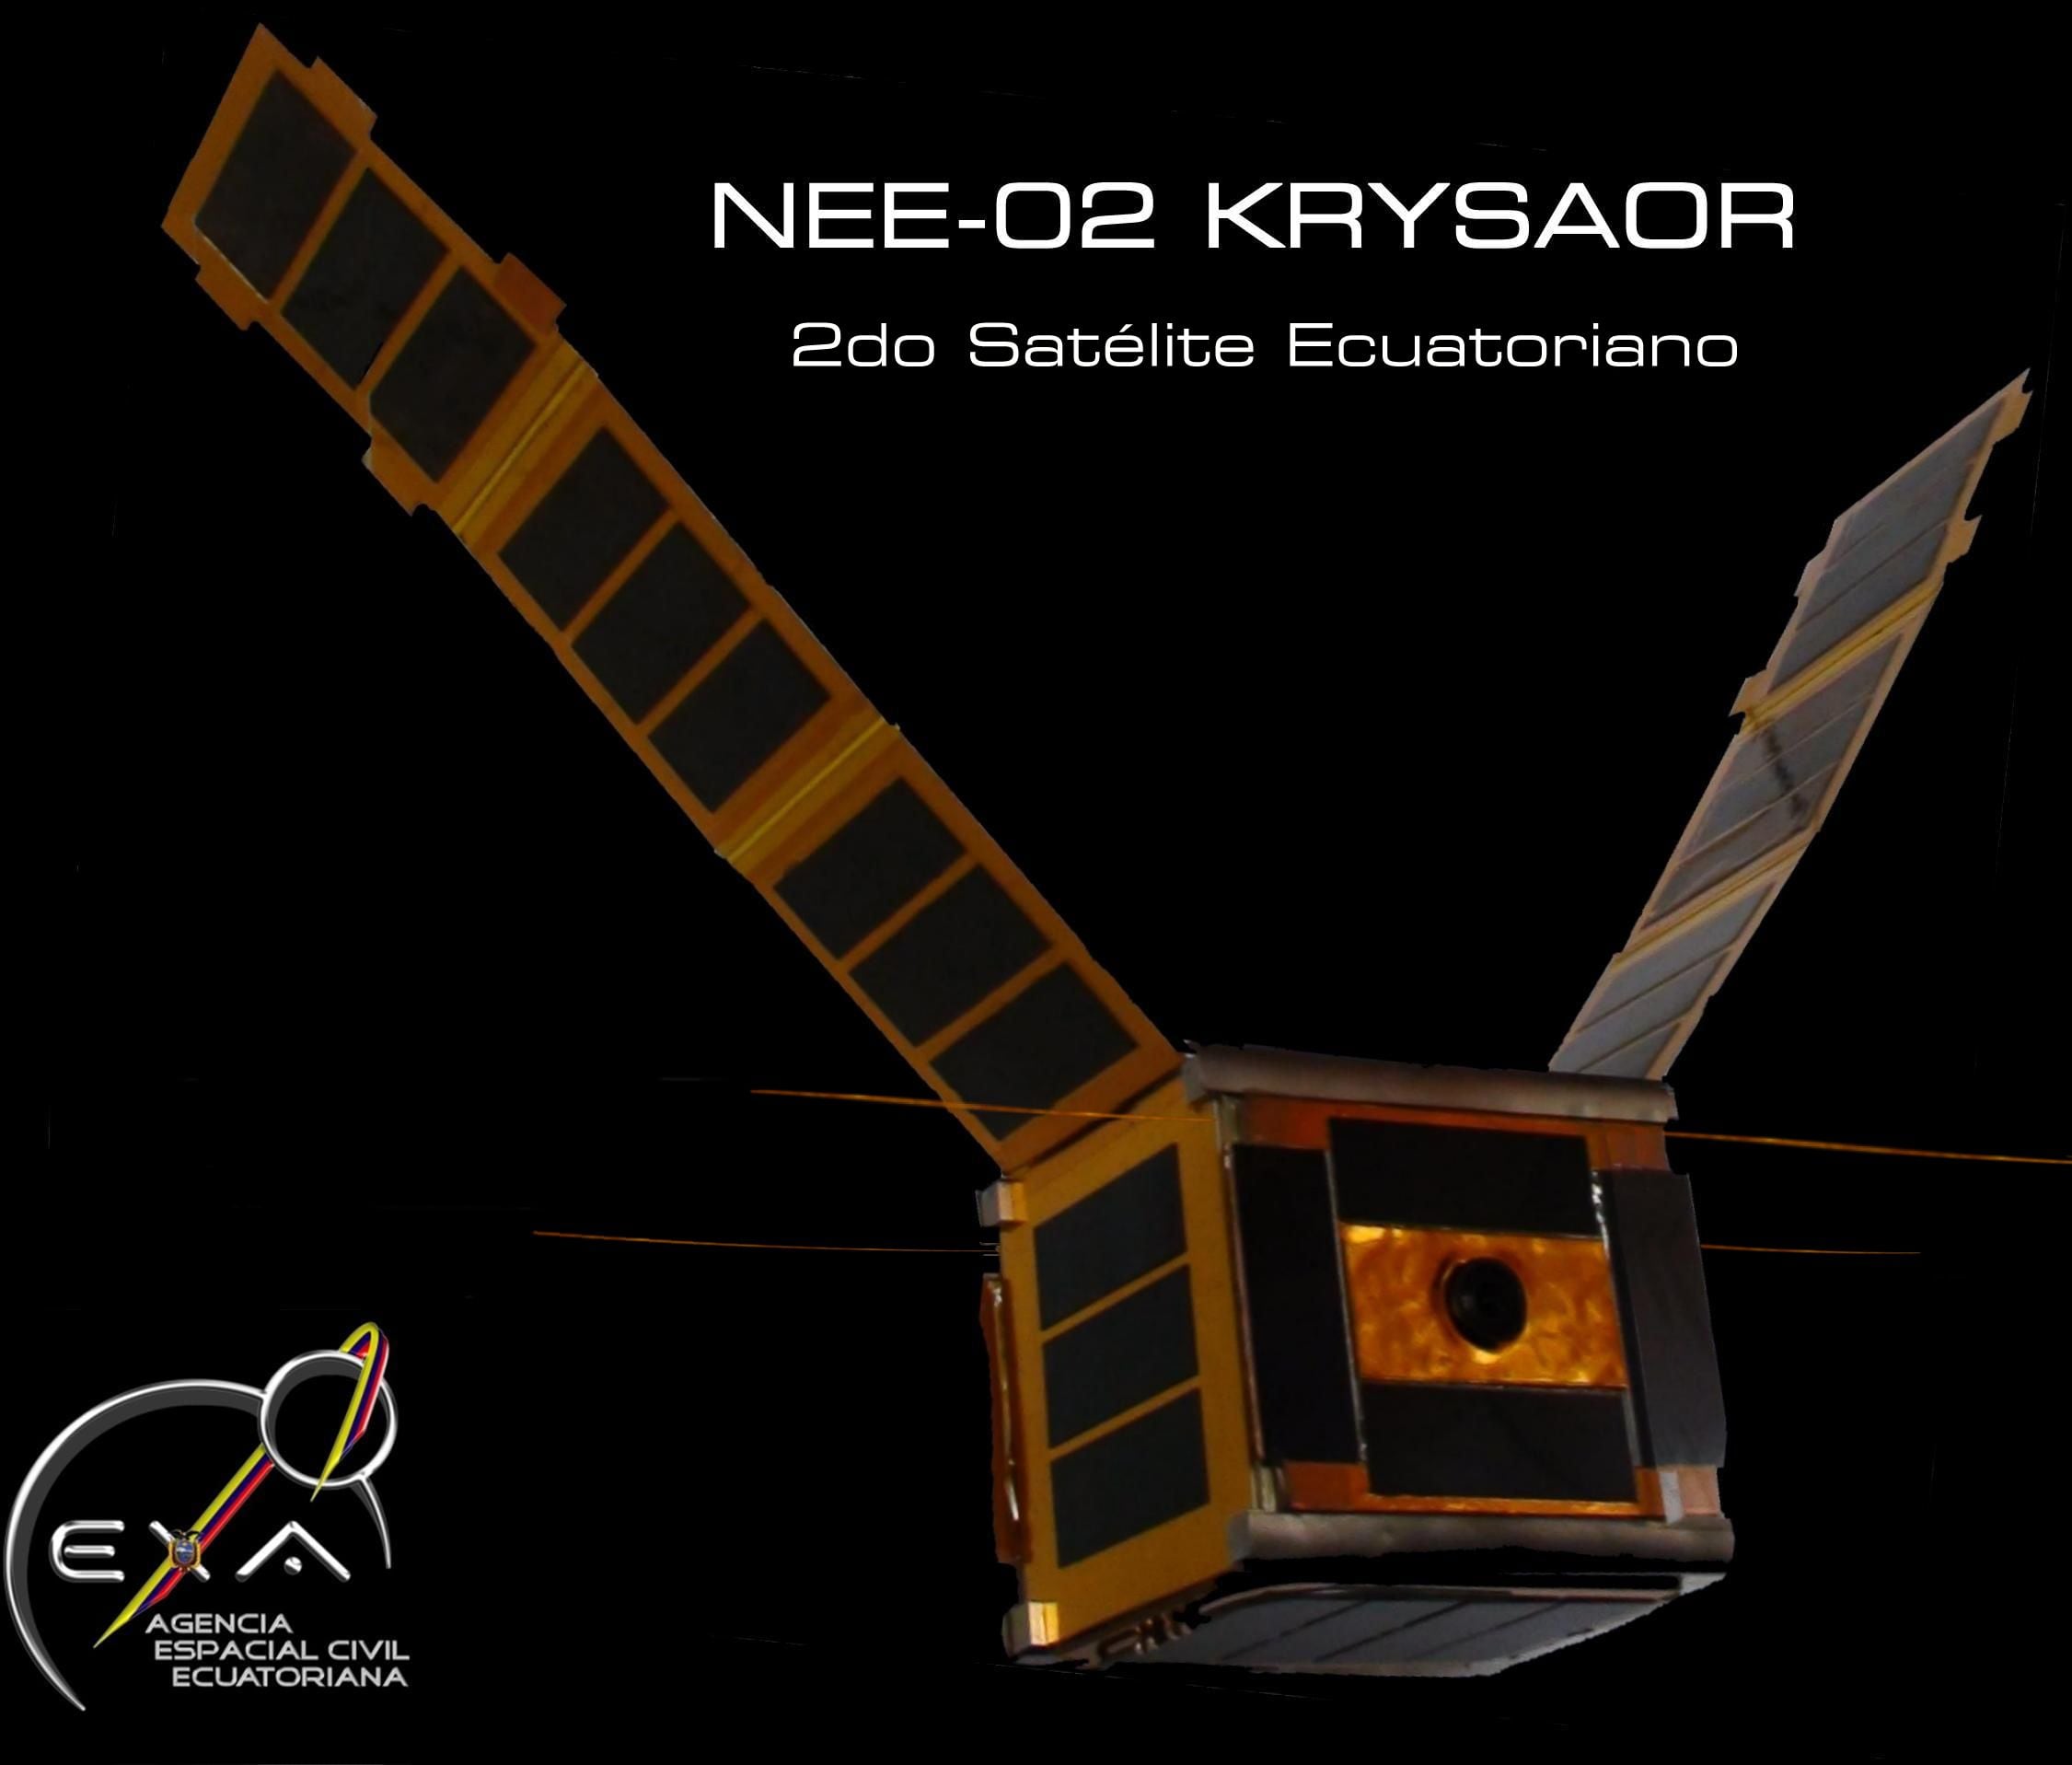 El satélite Krysaor, segundo construido en Ecuador, recuperó la señal de Pegaso. (EXA)